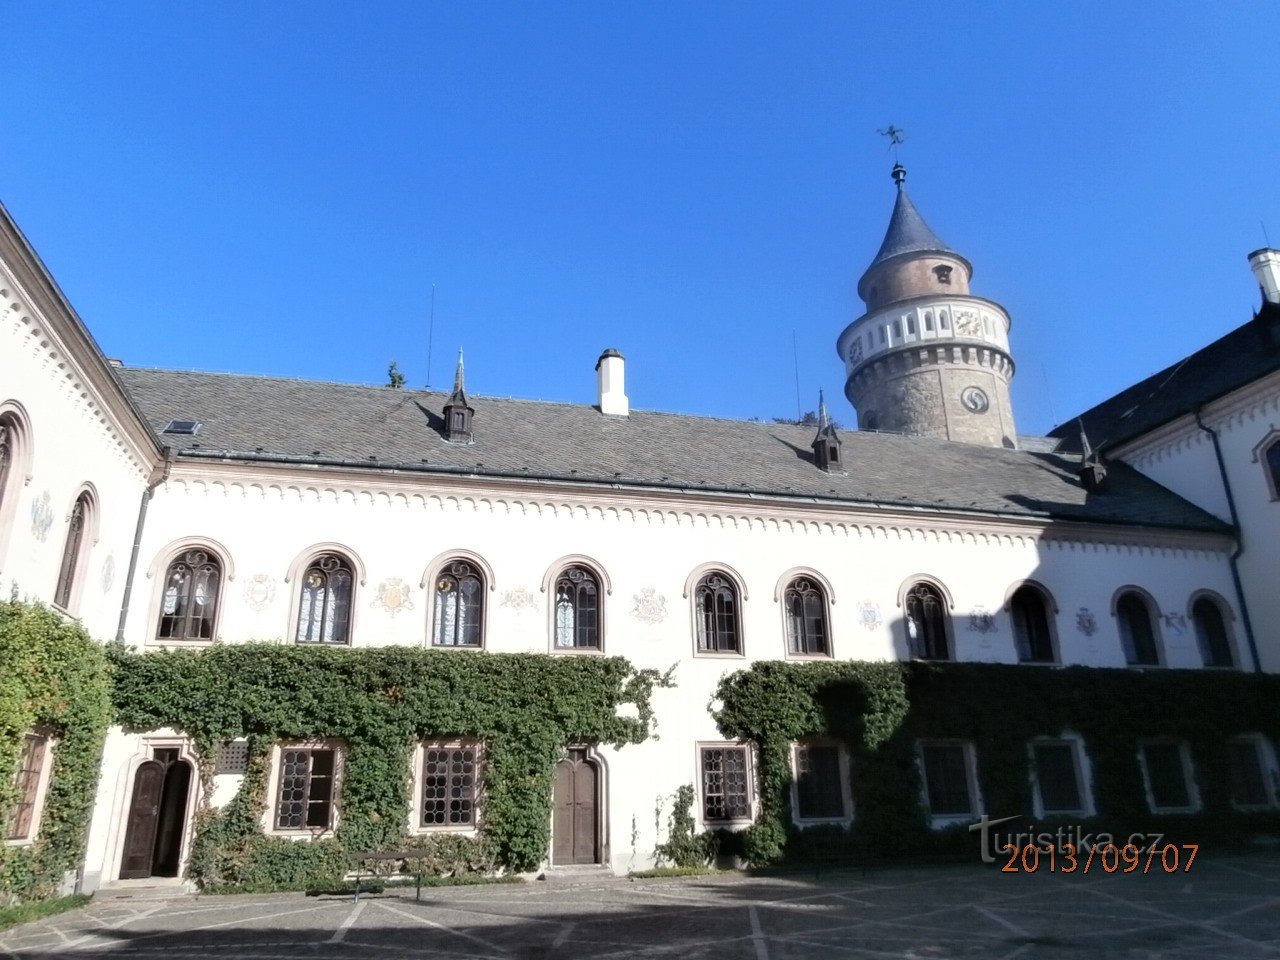 Romantični dvorac Sychrov